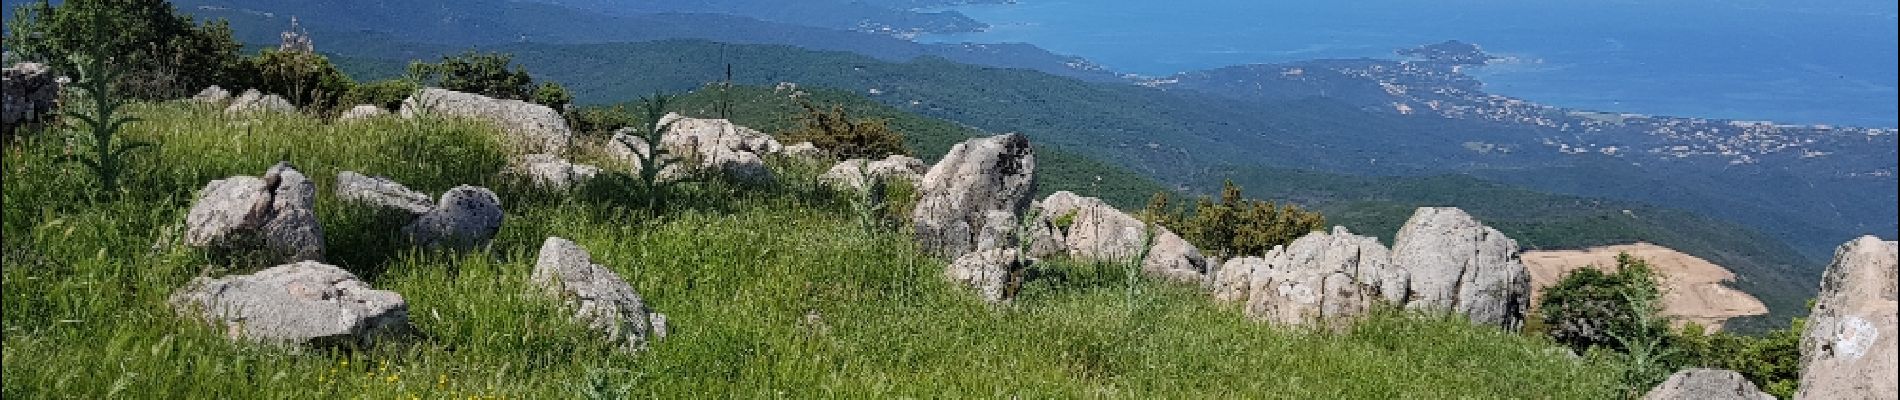 Tour Wandern Albitreccia - C10 Mare e Monti sud: Bisinao Porticcio - Photo